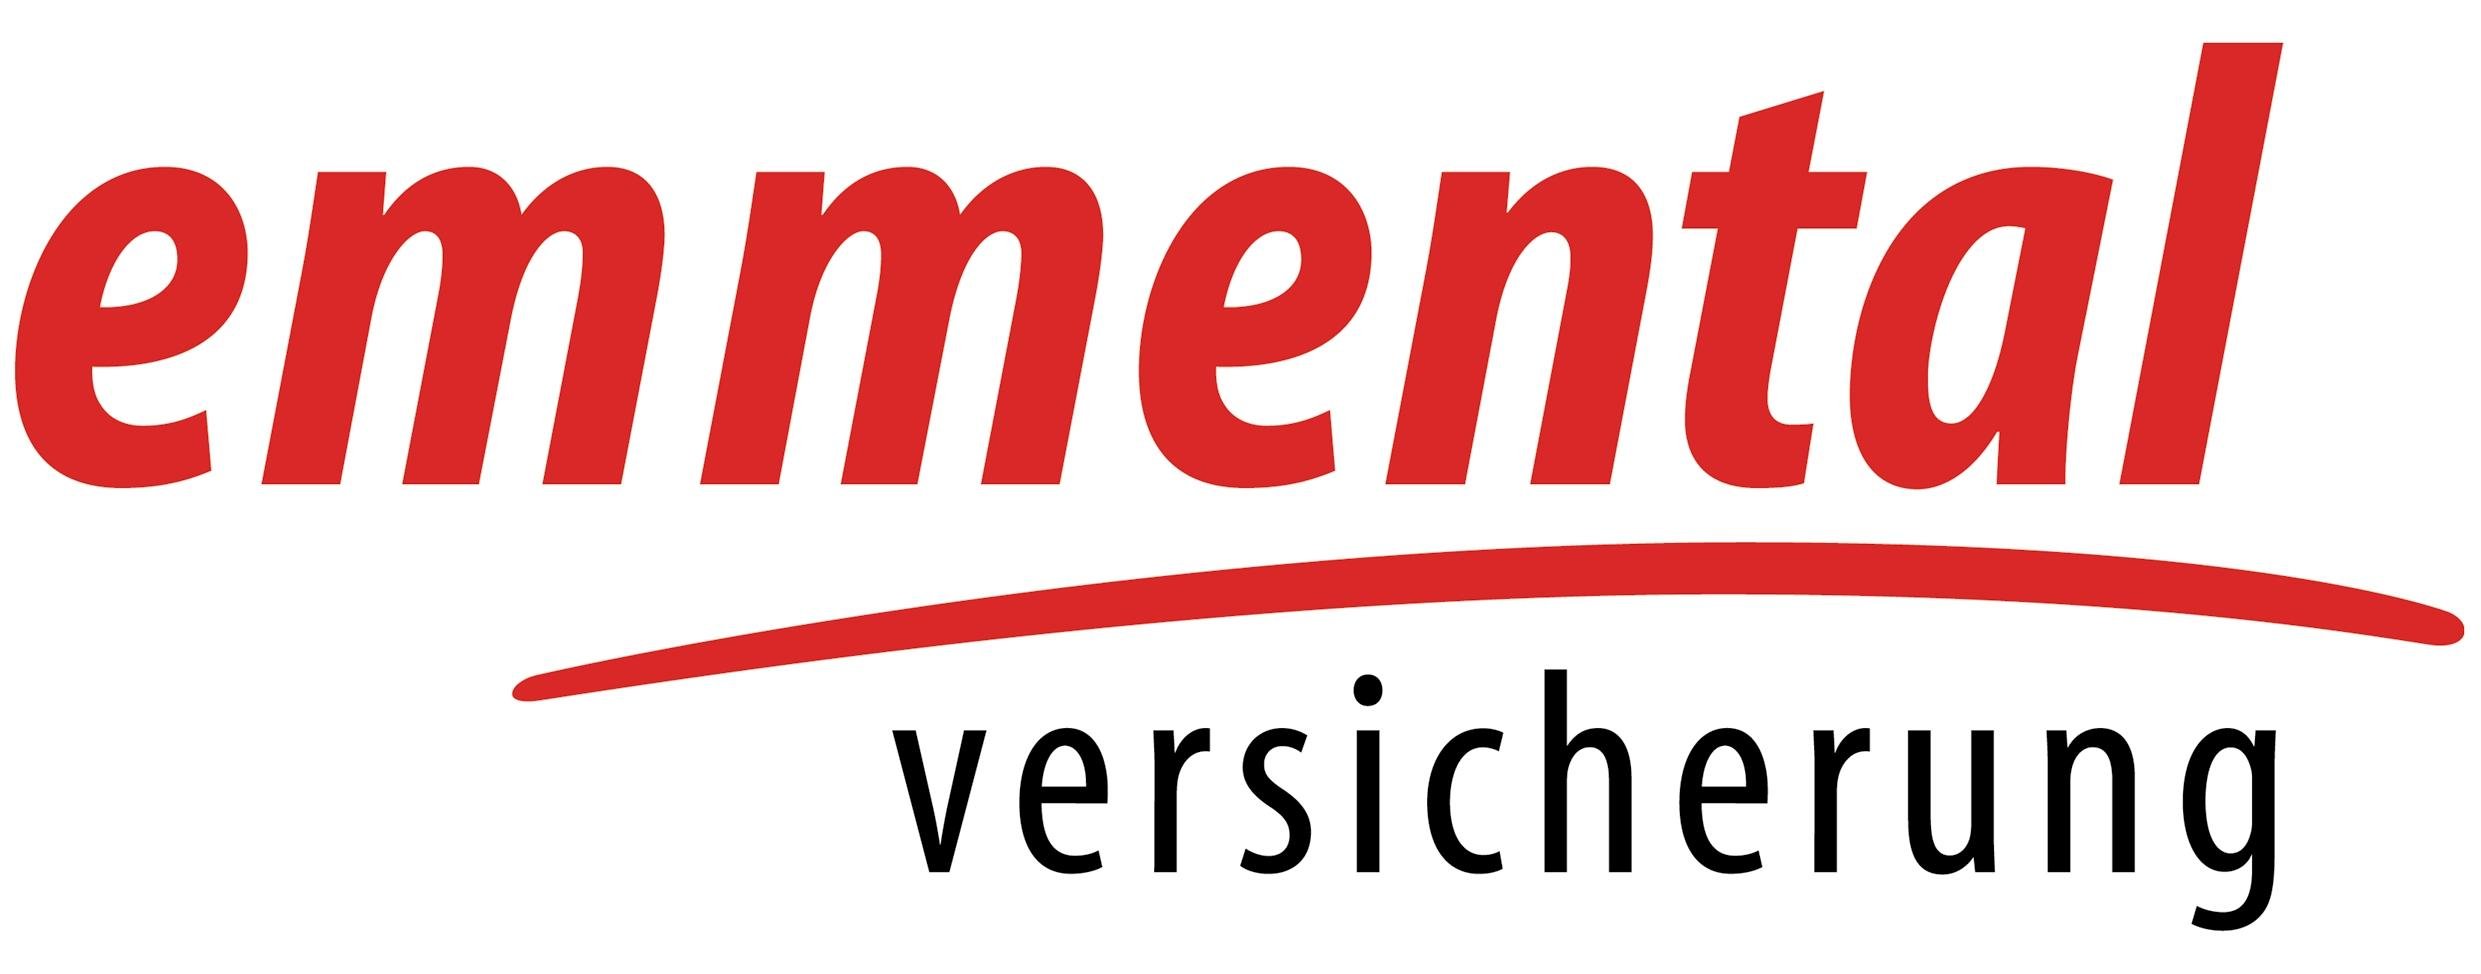 EM Logo deutsch gross.jpg